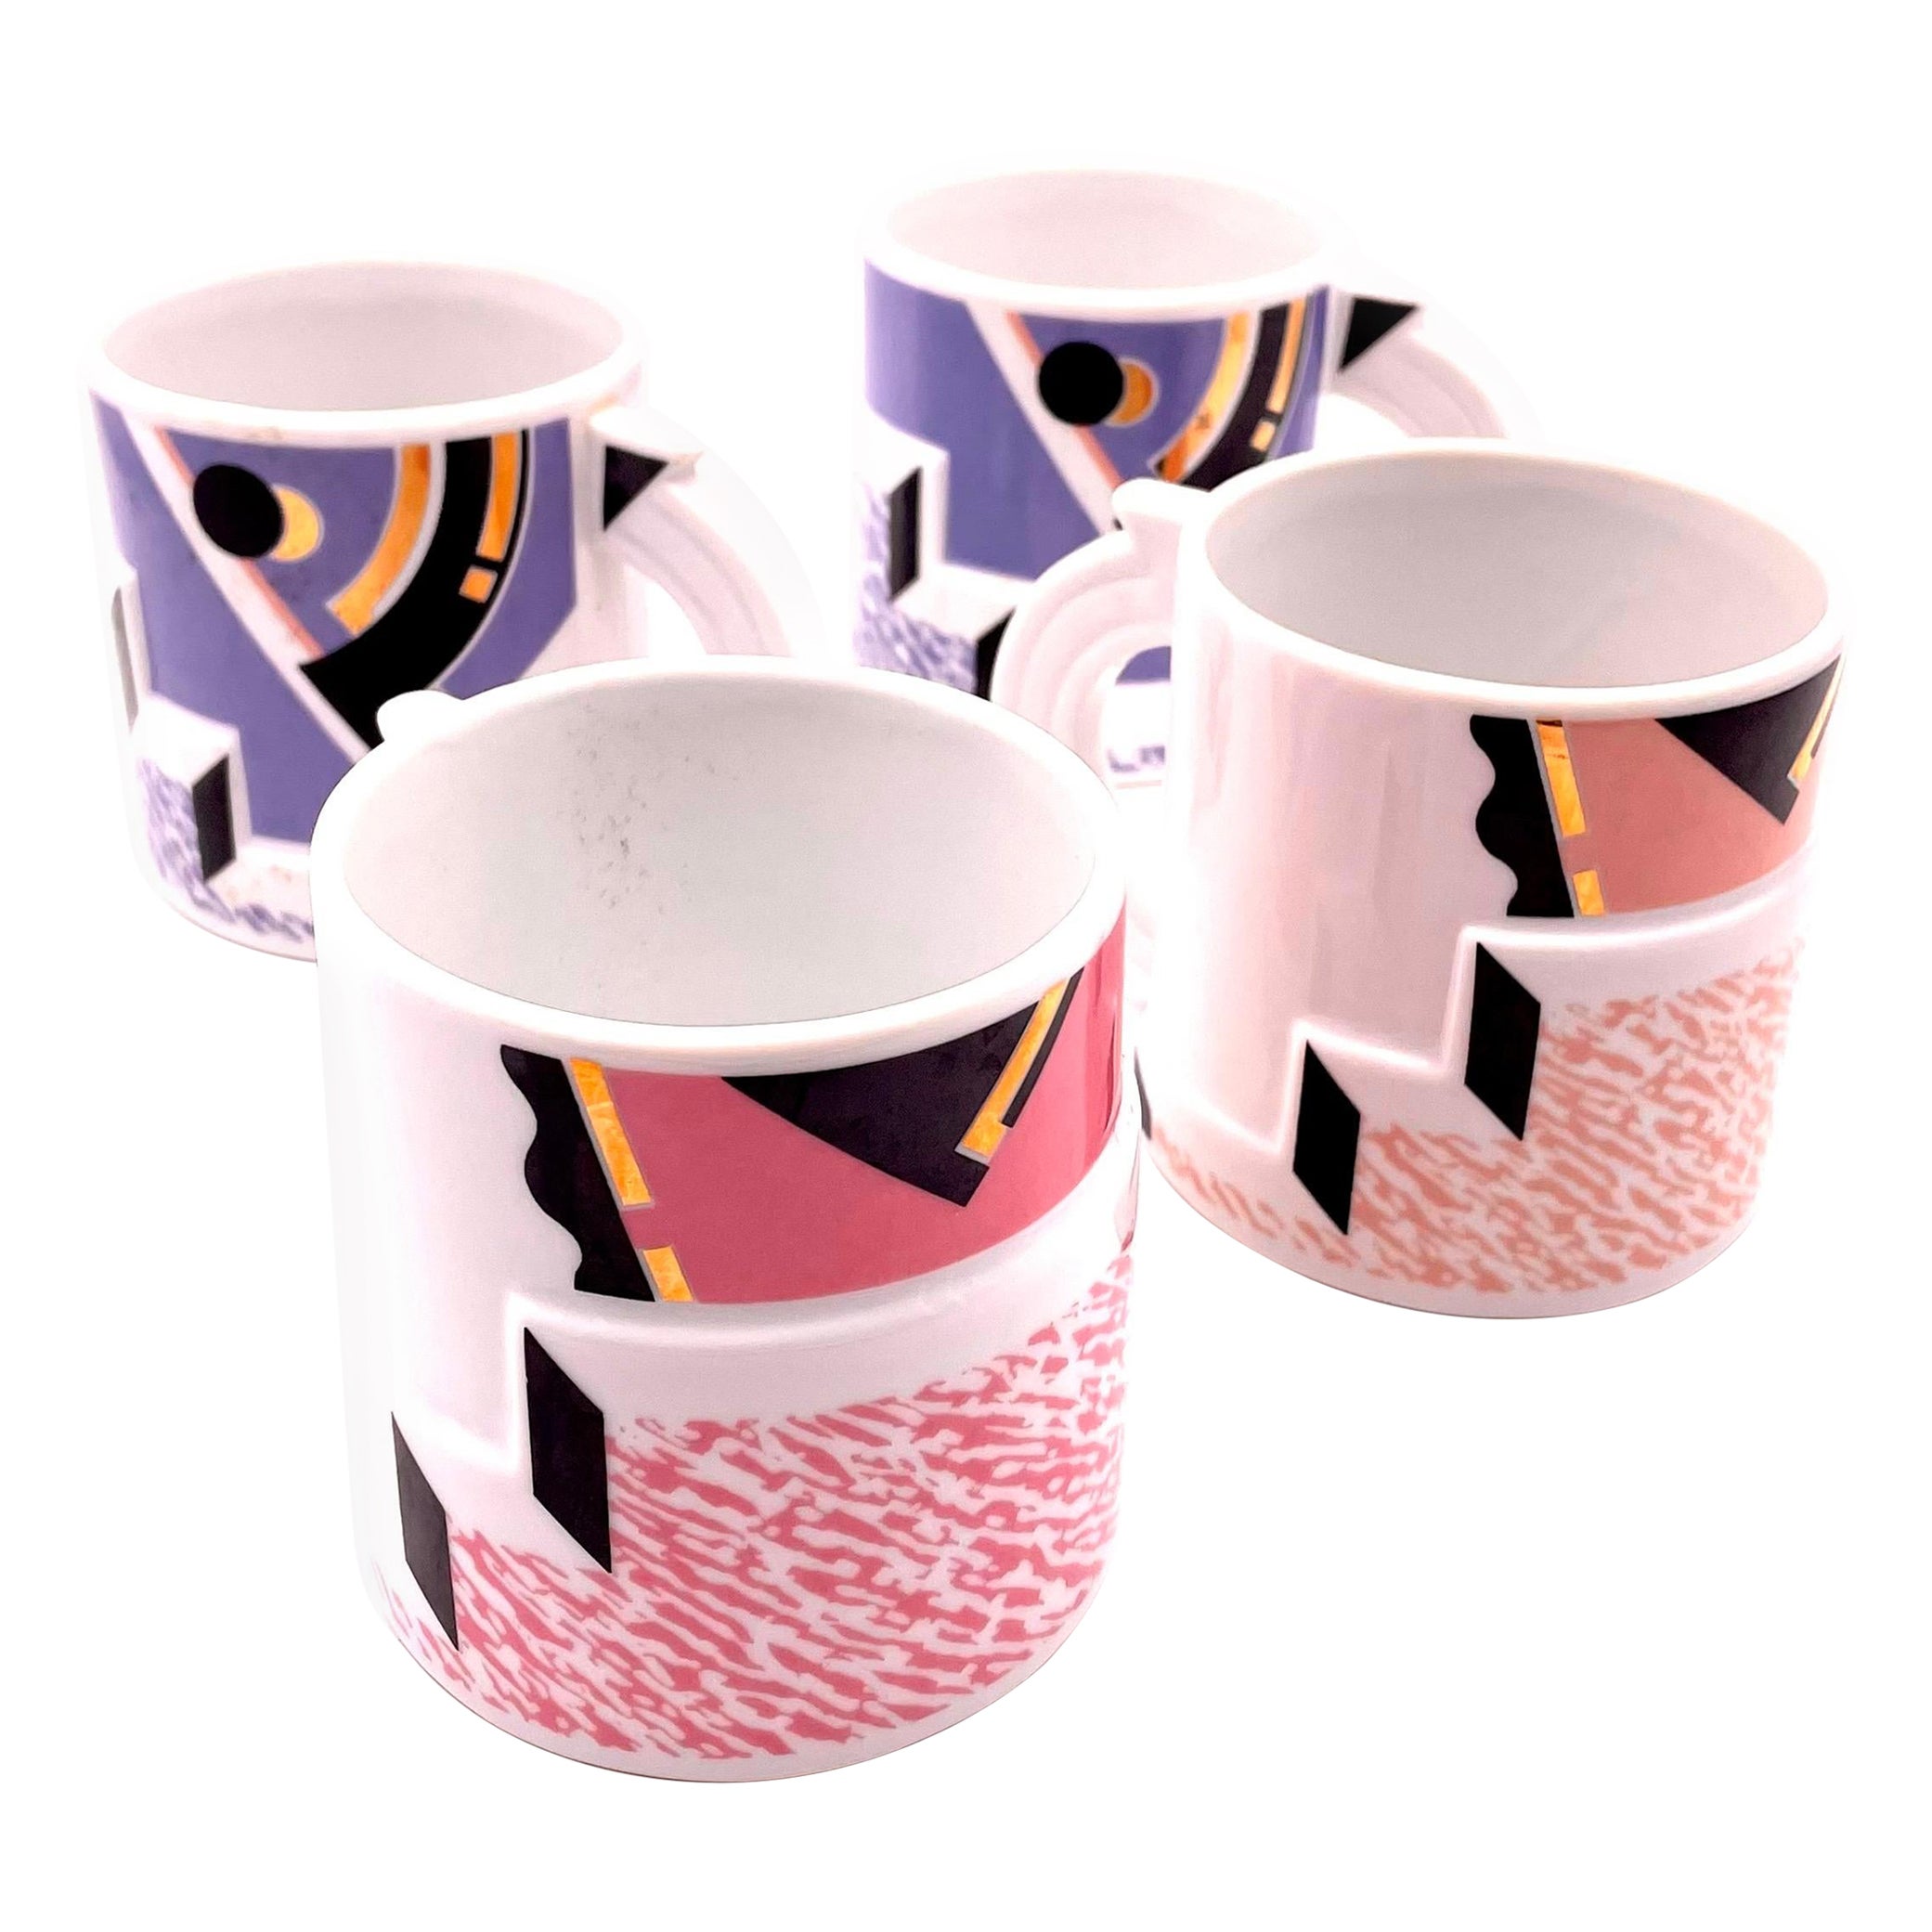 Kato Kogei Ceramics